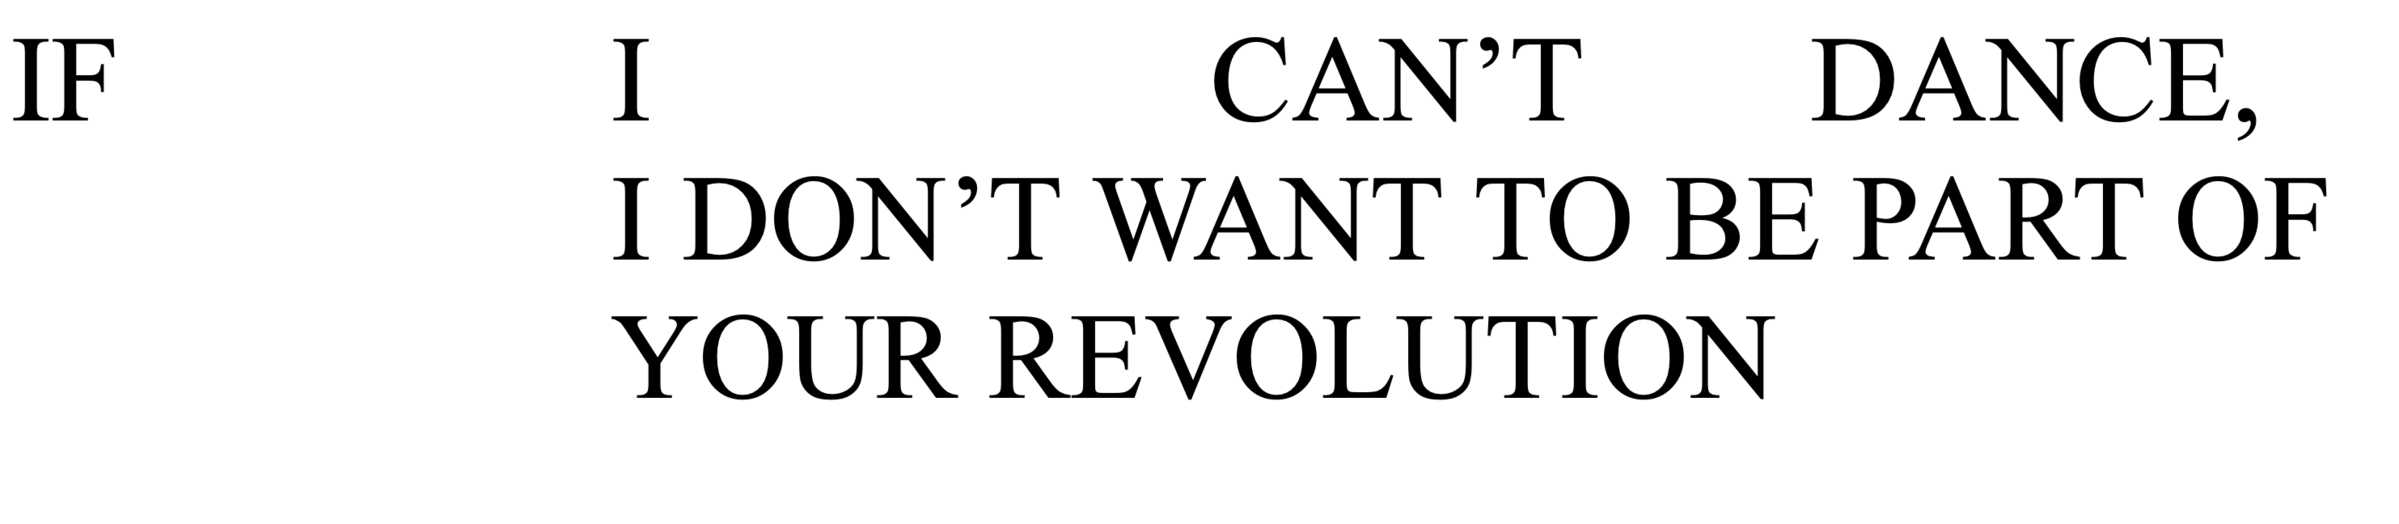 if I can't dance I don't want to be part of your revolution